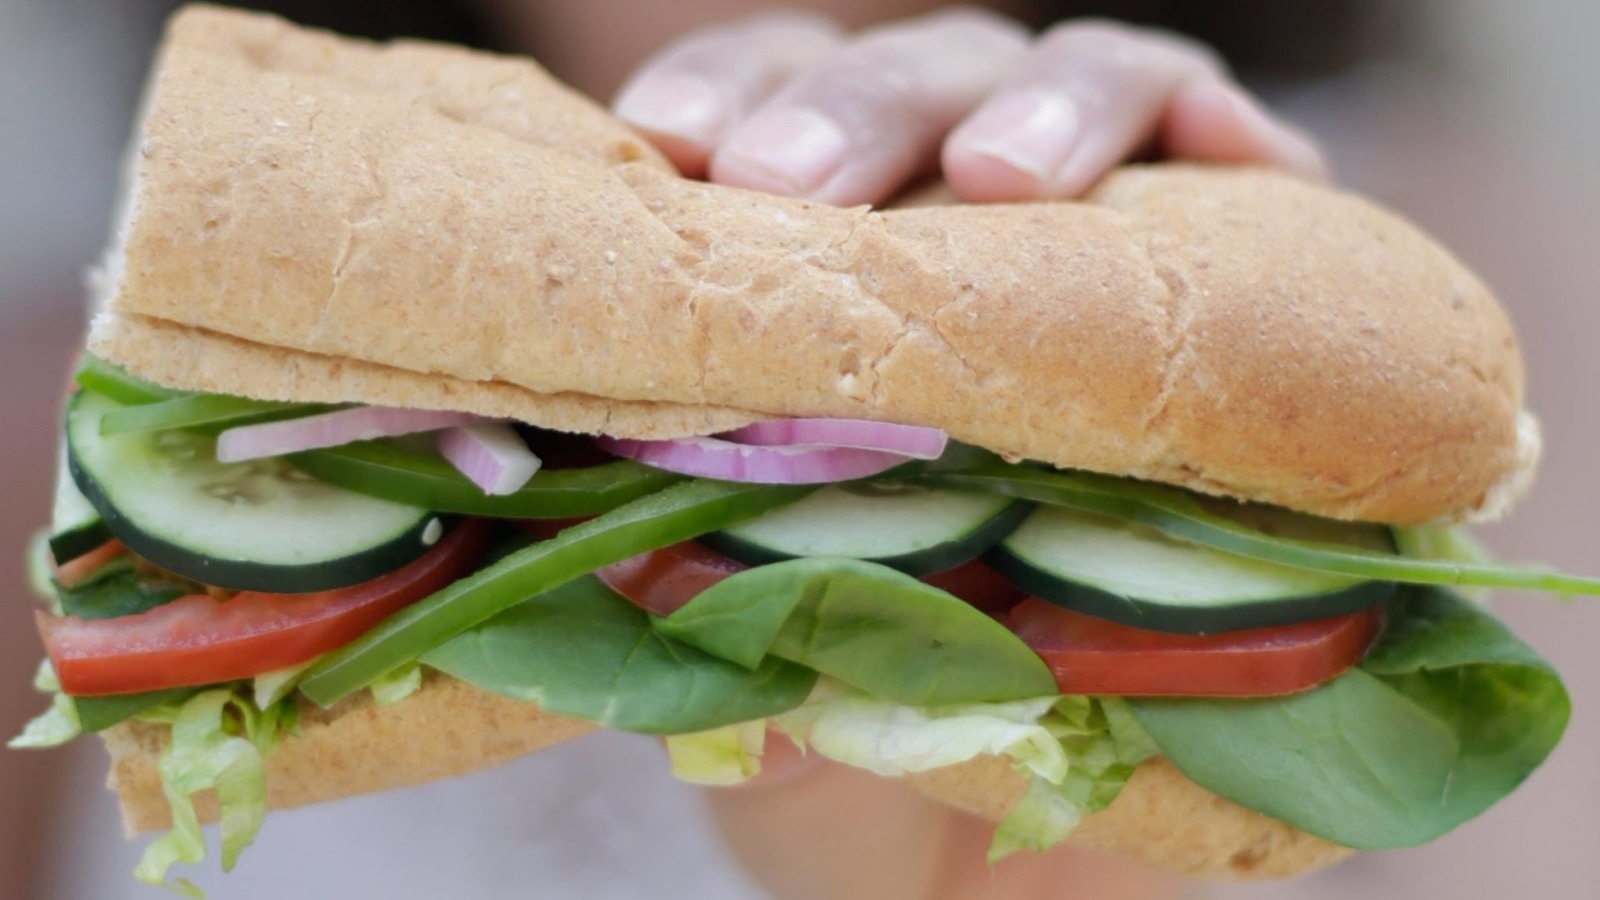 How To Eat Vegan At Subway - Subway Vegan Menu Items